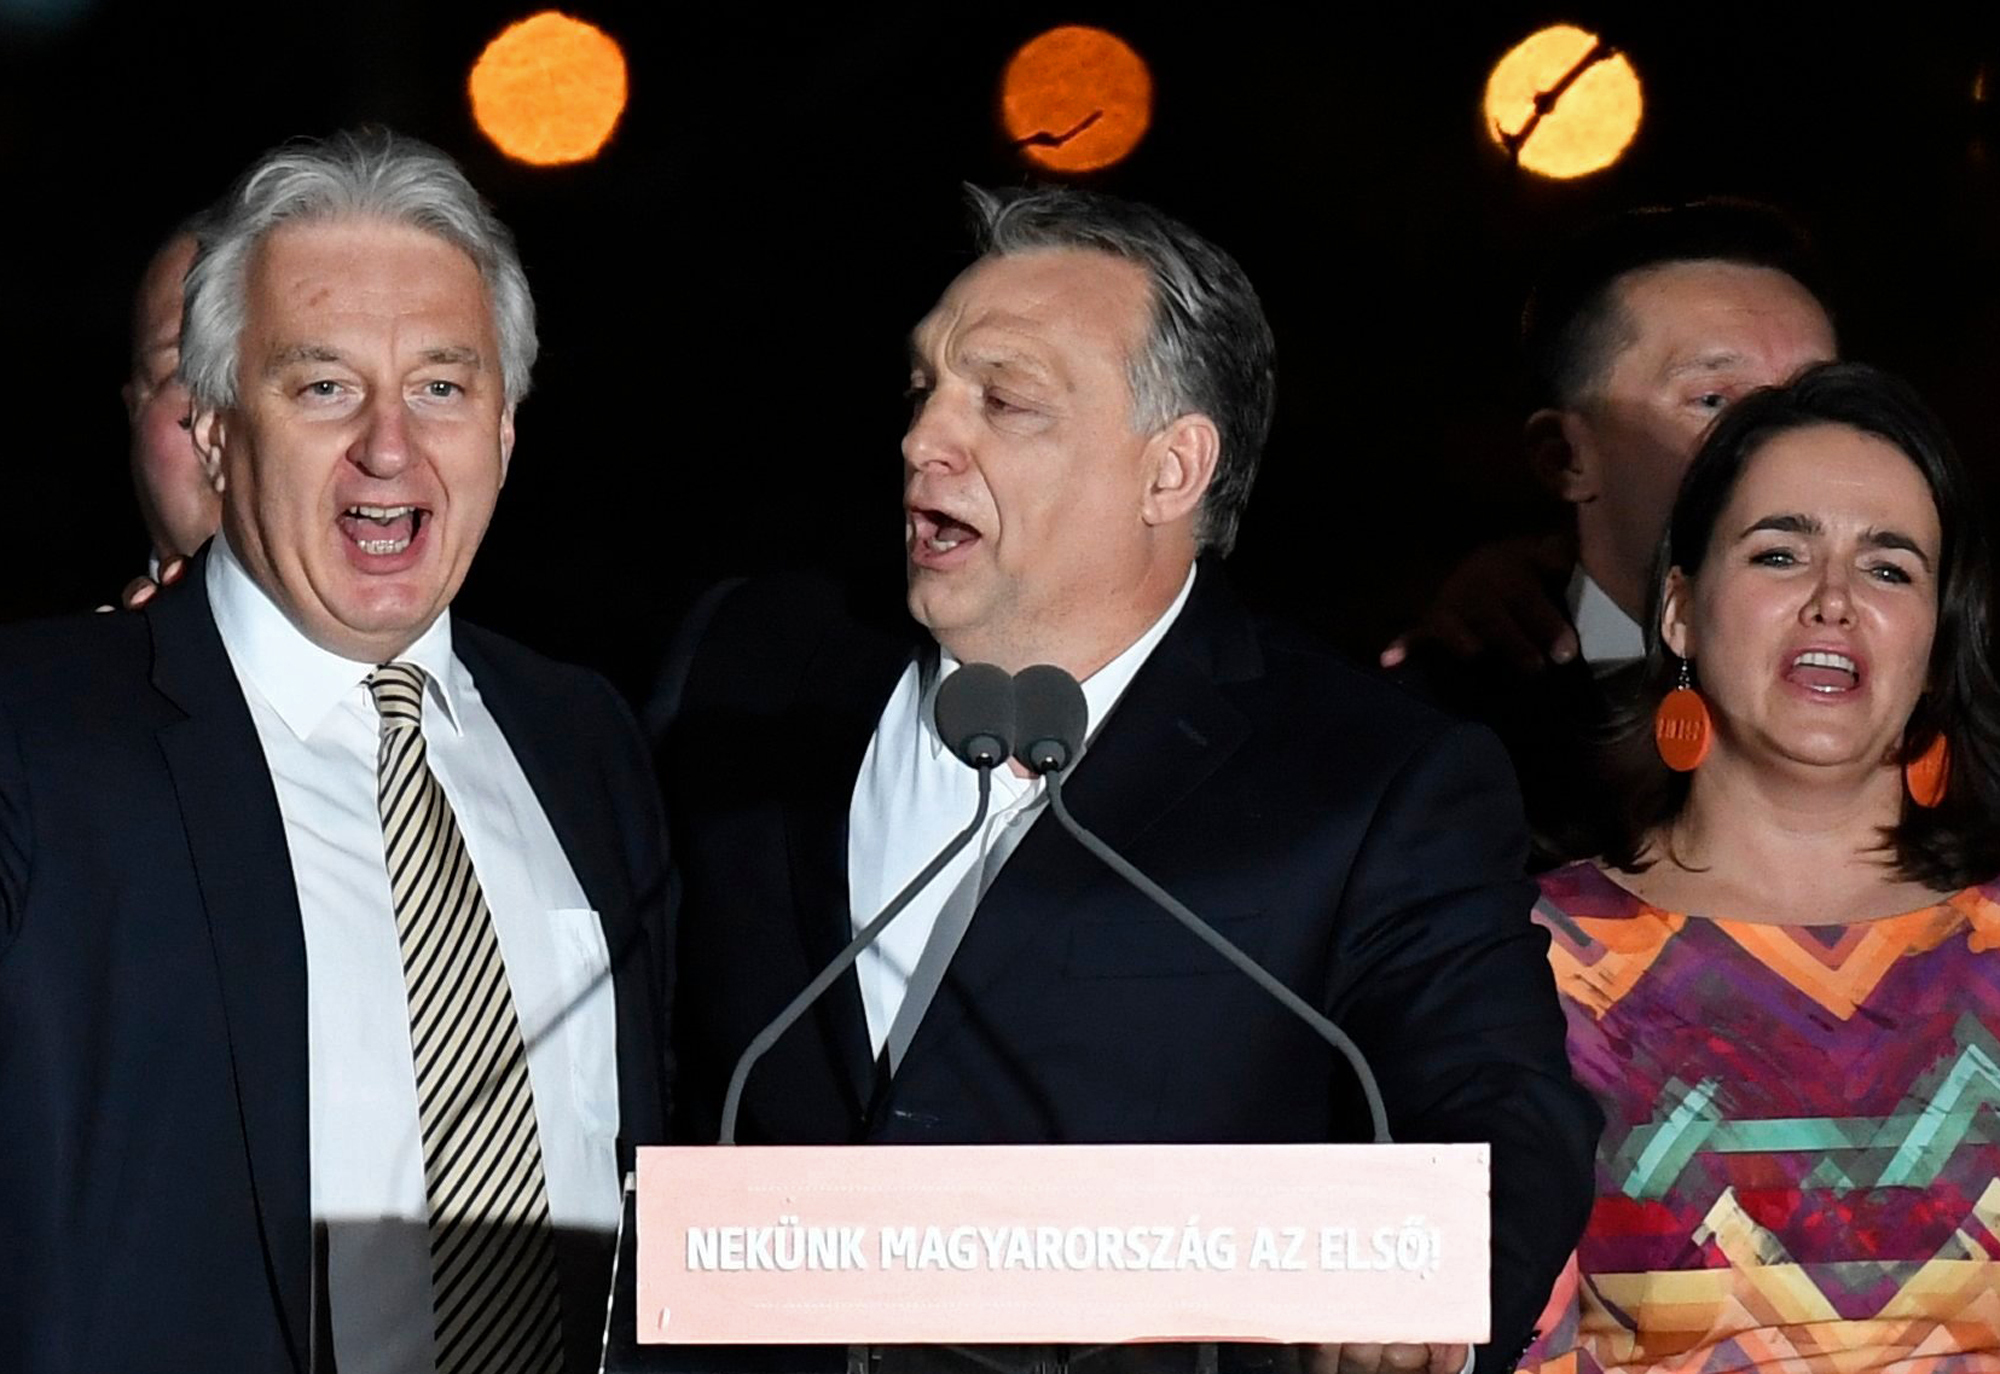 Защо източноевропейците харесват лидери като Орбан?